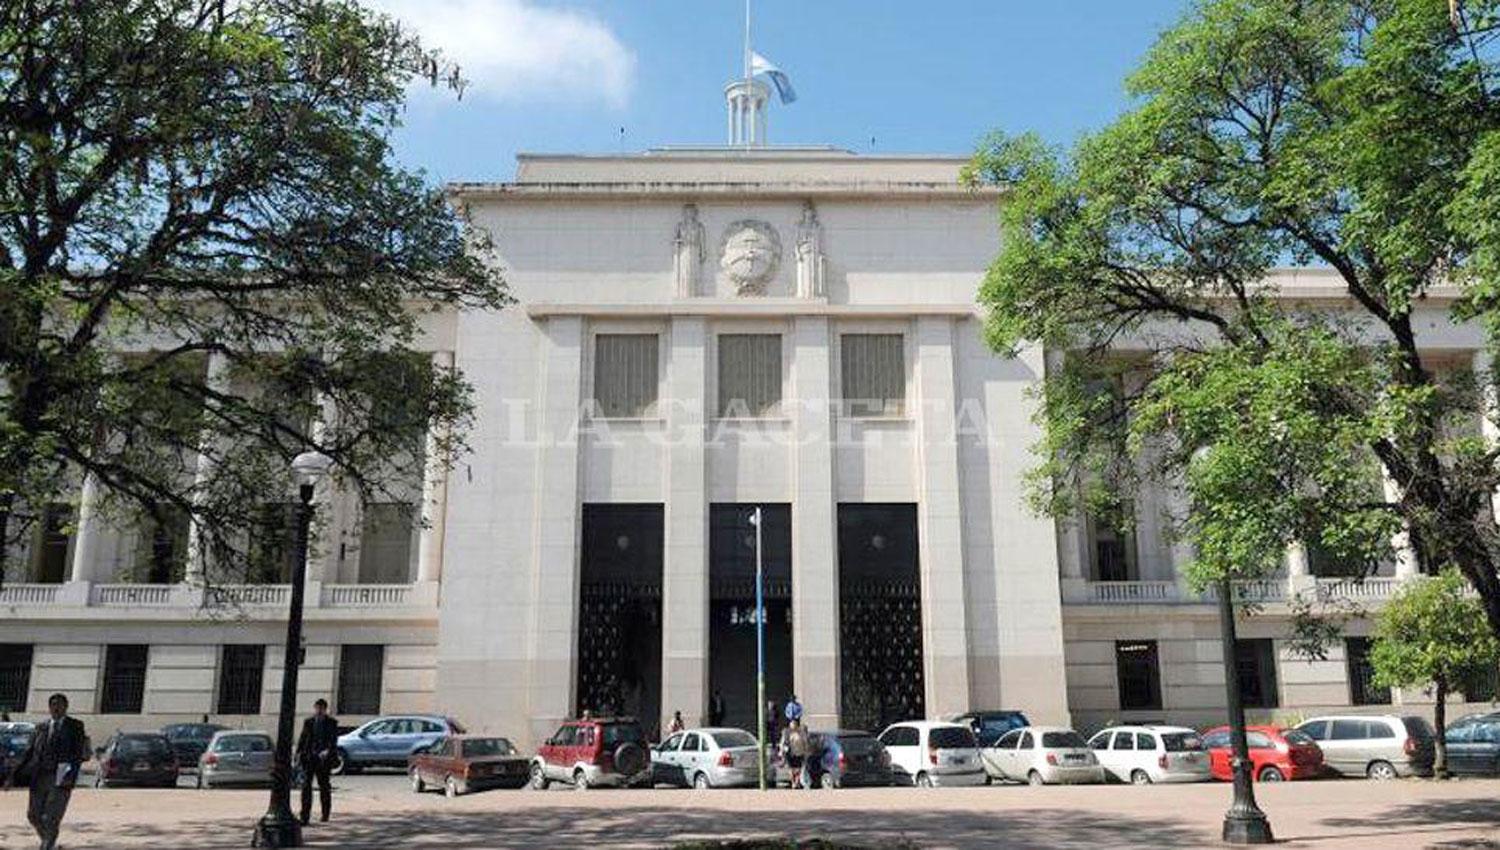 TRIBUNALES. La sede de la Corte Suprema de Justicia de Tucumán. ARCHIVO